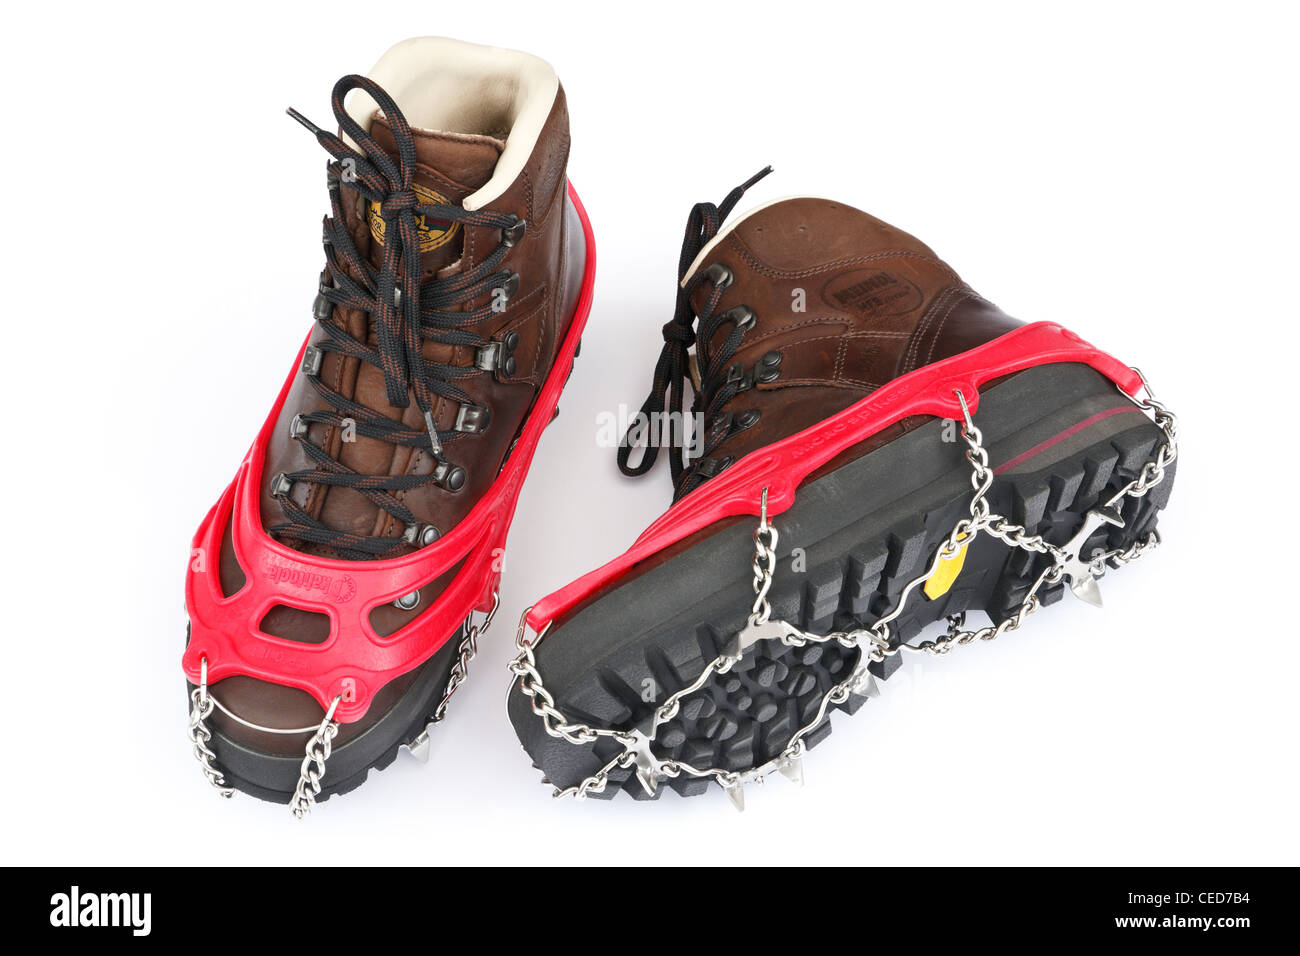 Ein paar traditionelle braun Leder Stiefel mit Kahtoola Microspikes für den  Einsatz auf Eis und Schnee isoliert auf einem weißen Hintergrund. UK  Stockfotografie - Alamy